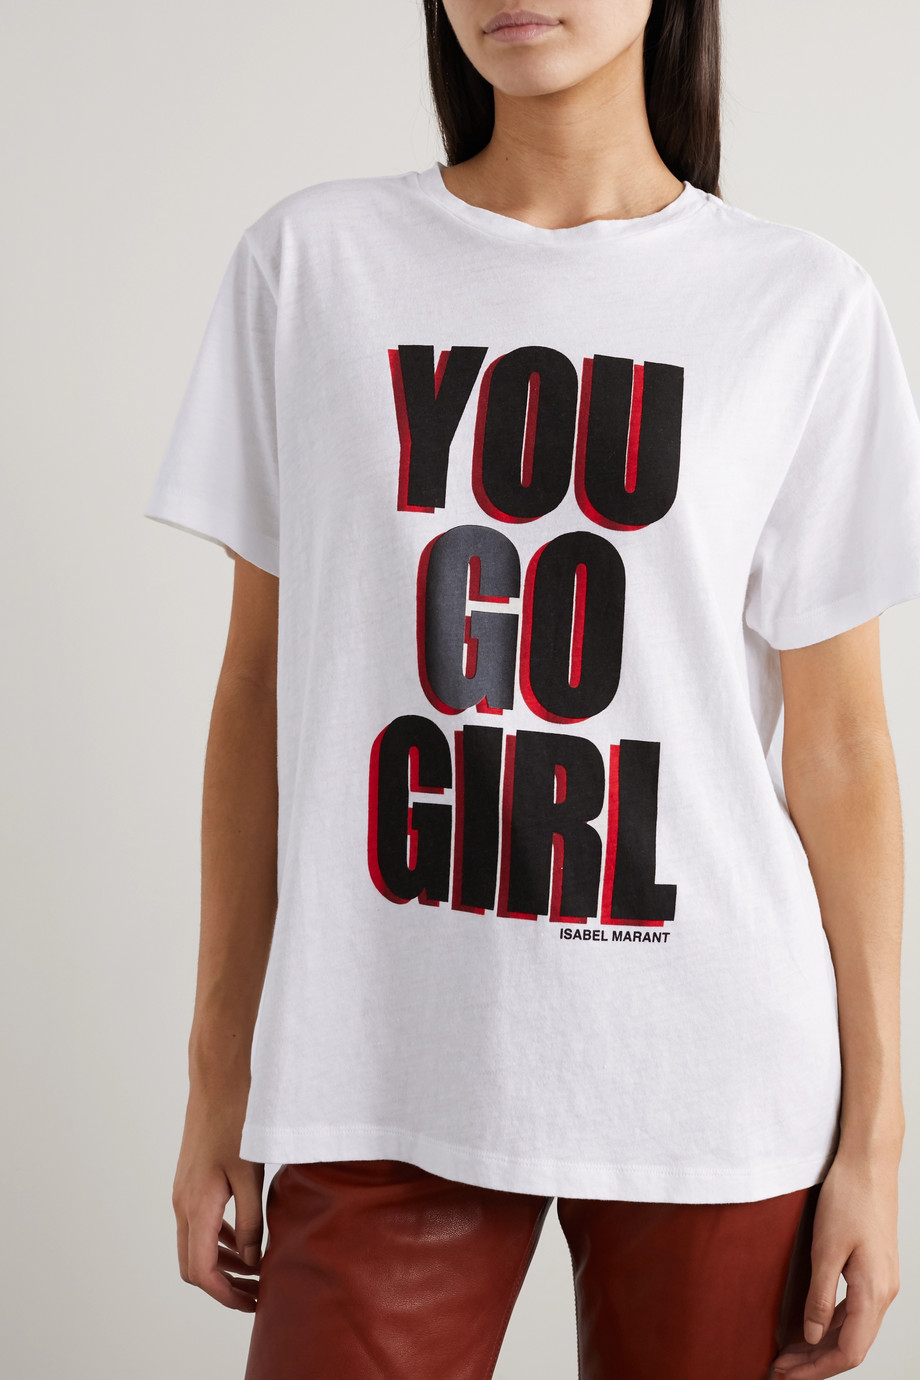 Net-a-Porter x Isabel Marant International Women's Day T-shirt 2020.